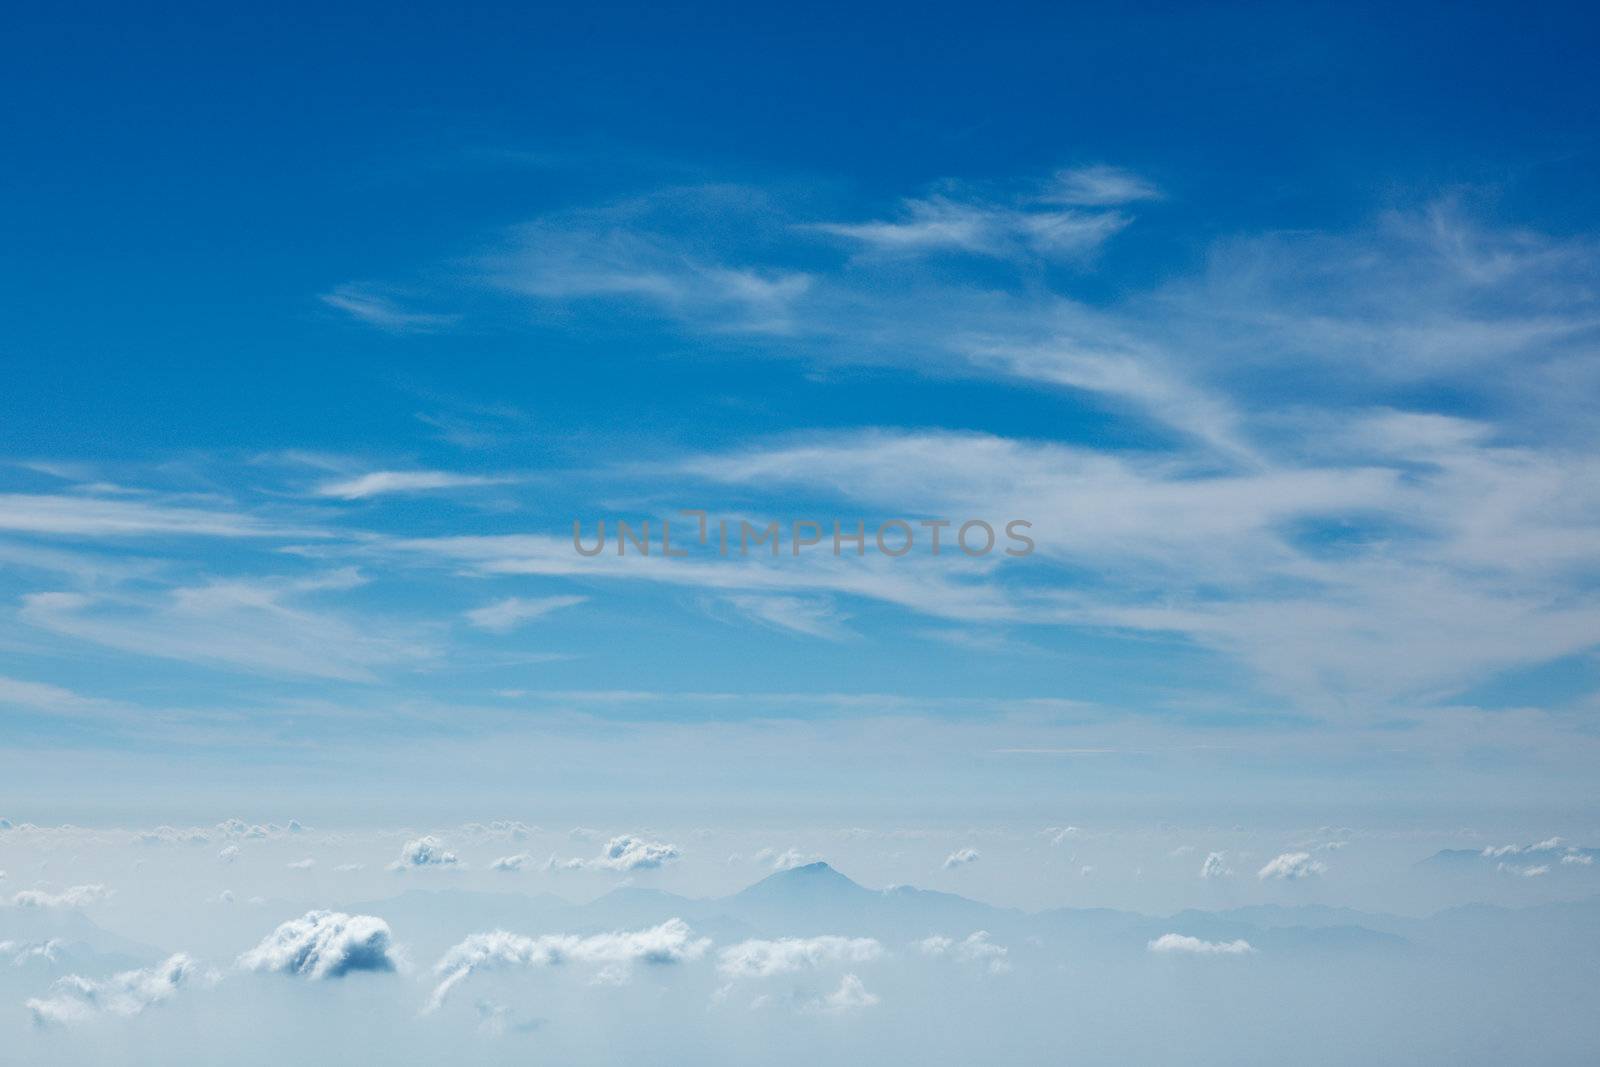 Mountains in clouds. Kodaikanal, Tamil Nadu by dimol